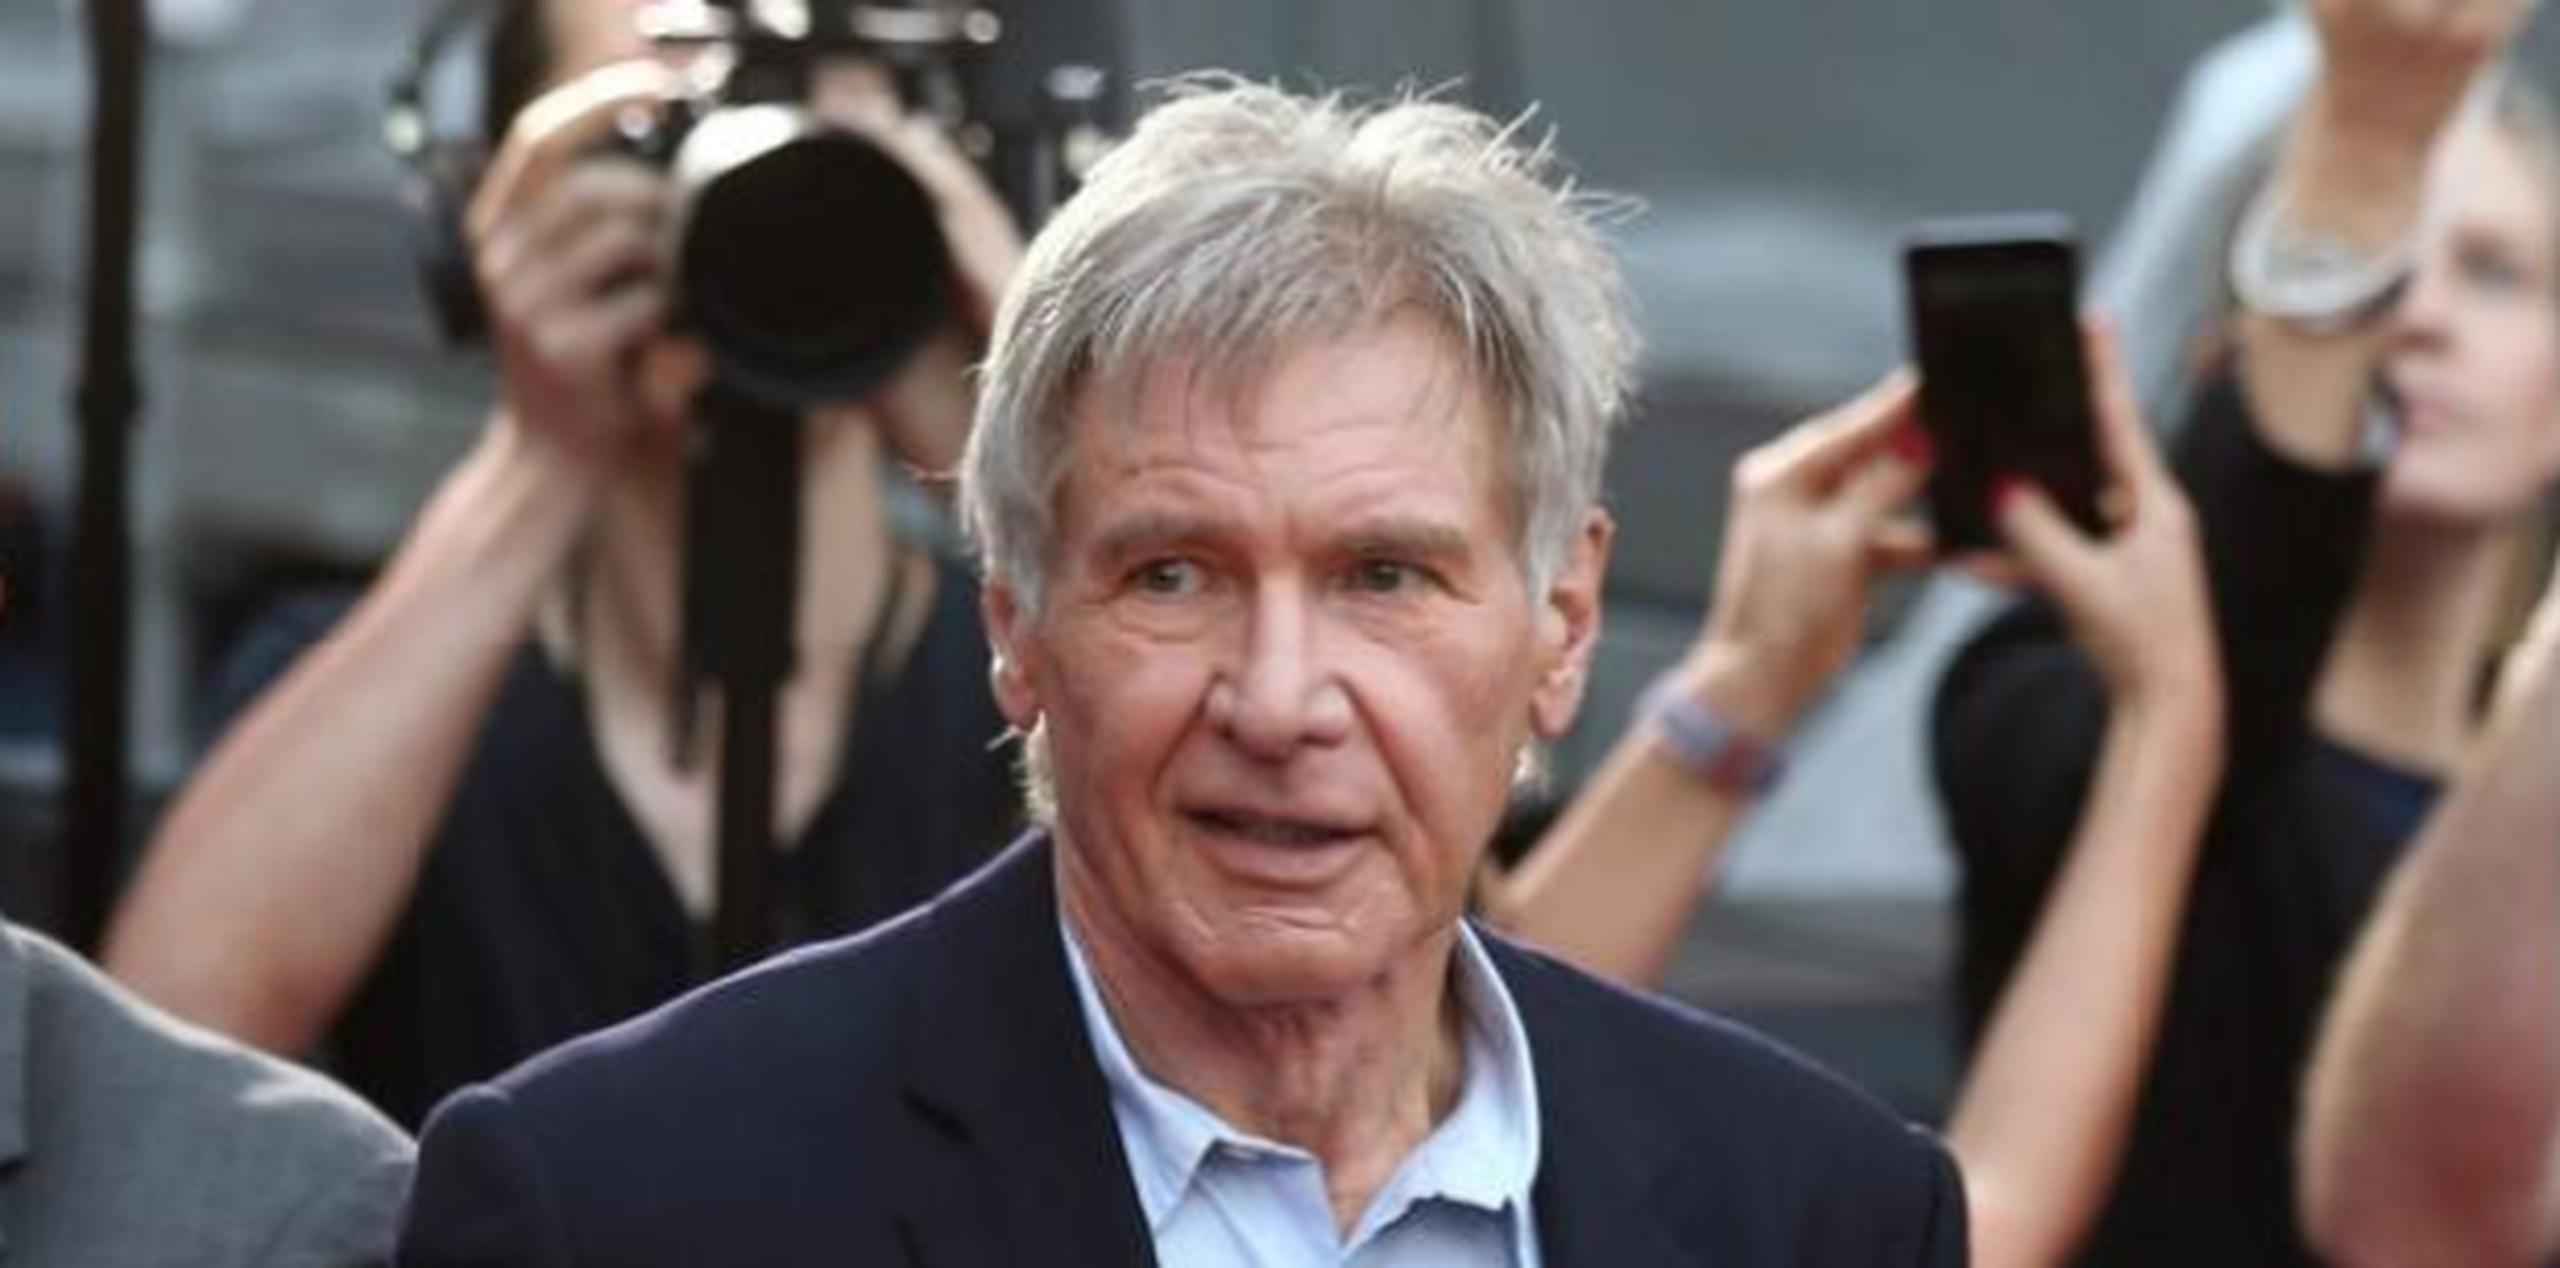 El estreno de la secuela del clásico de ciencia ficción está previsto para octubre de 2017 y contará nuevamente con la actuación de Harrison Ford. (AP)